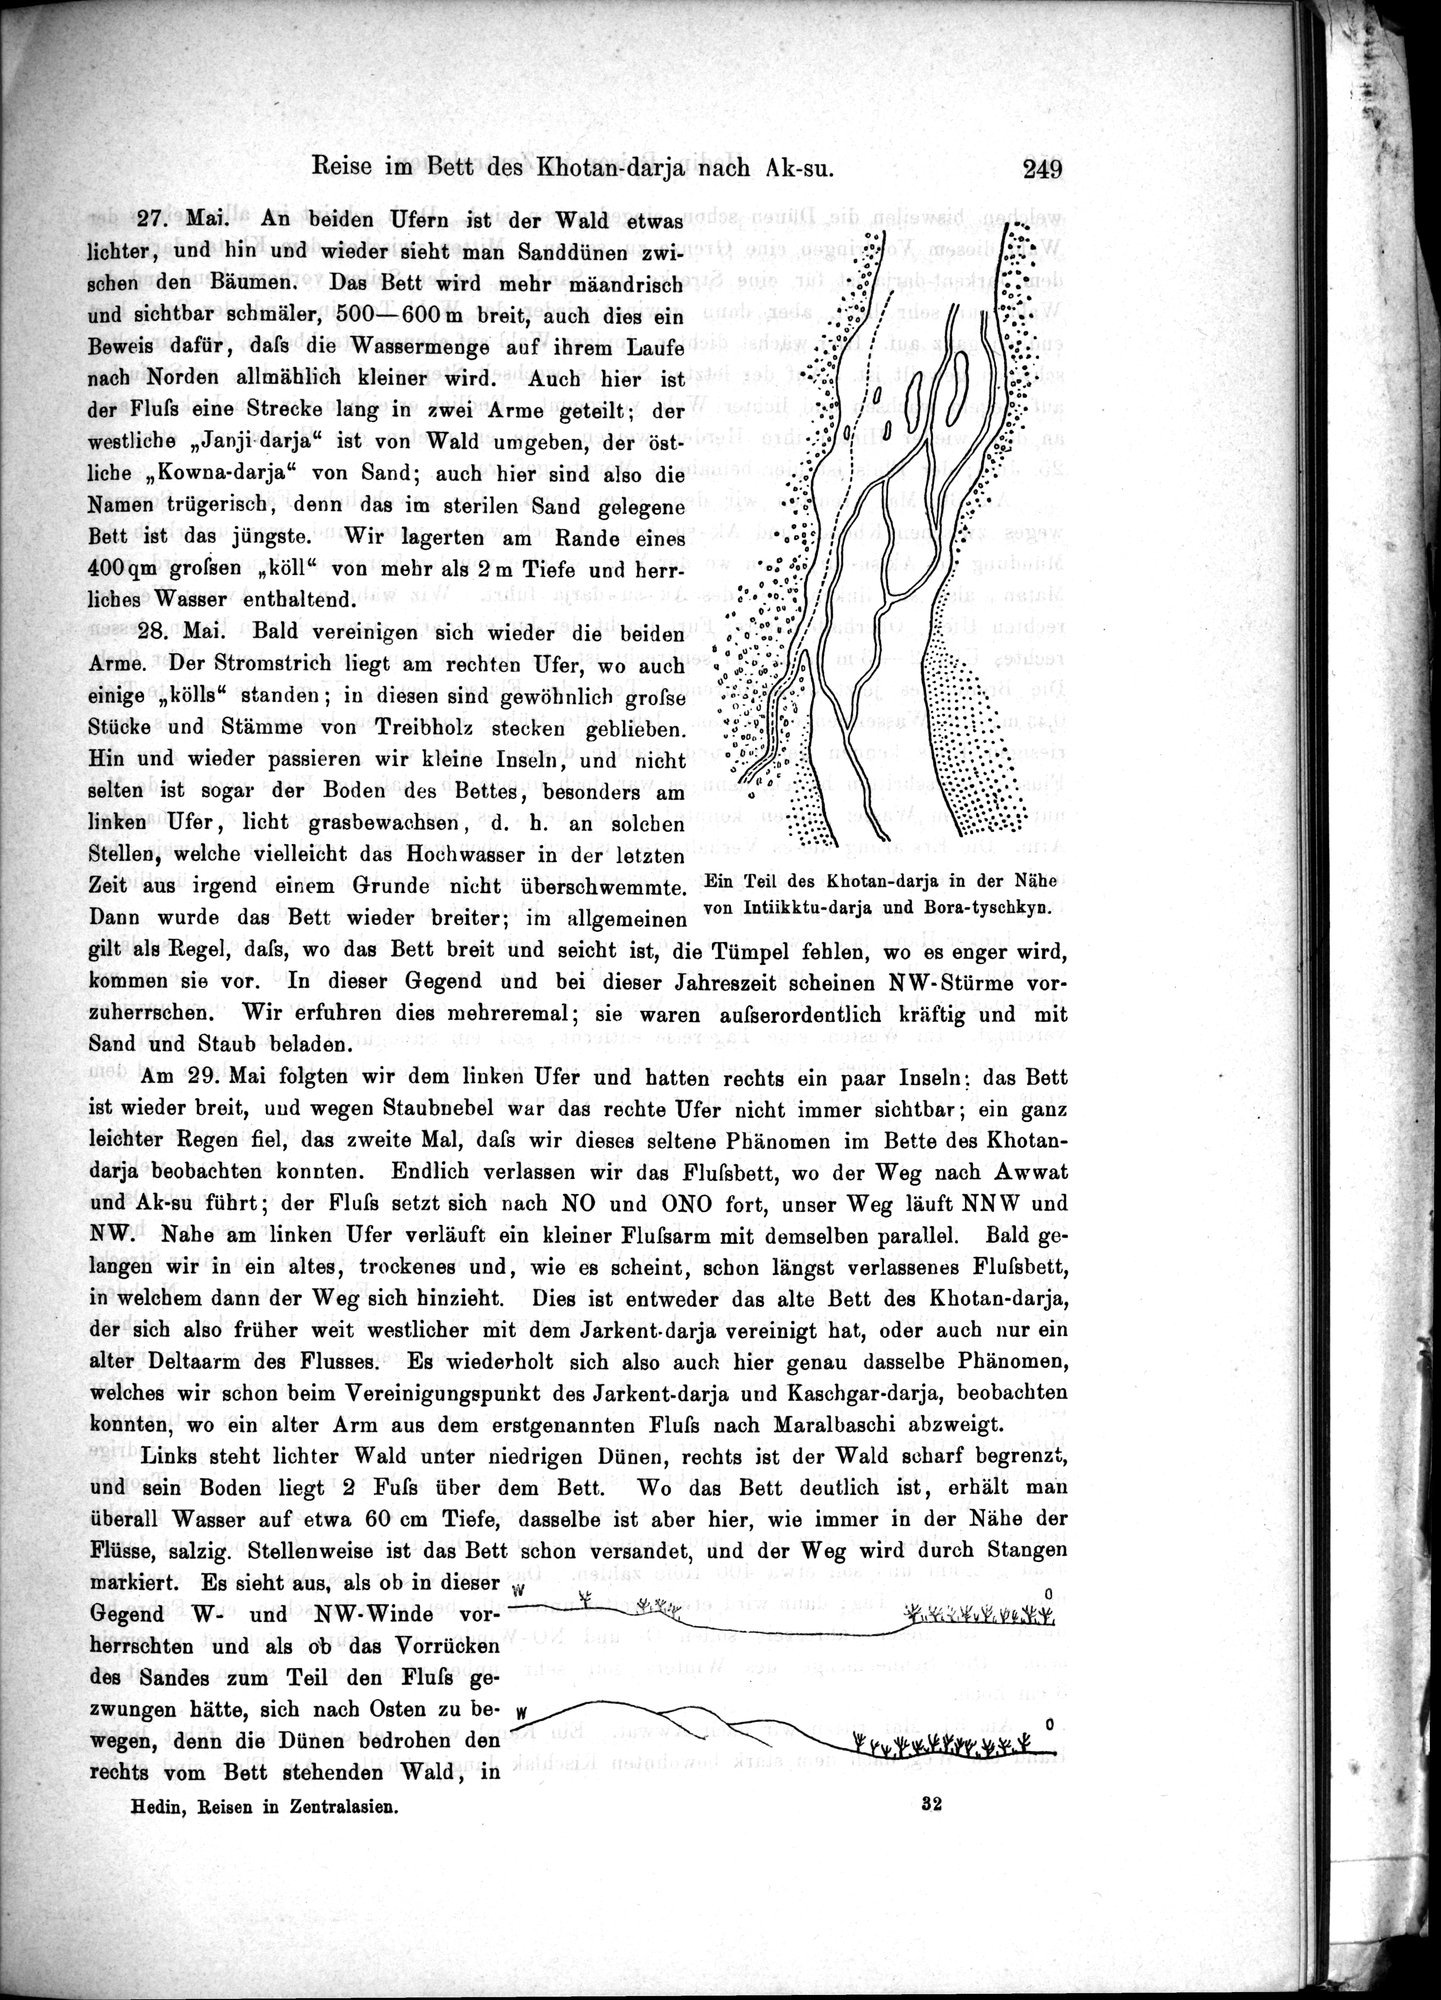 Die Geographische-Wissenschaftlichen Ergebnisse meiner Reisen in Zentralasien, 1894-1897 : vol.1 / Page 261 (Grayscale High Resolution Image)